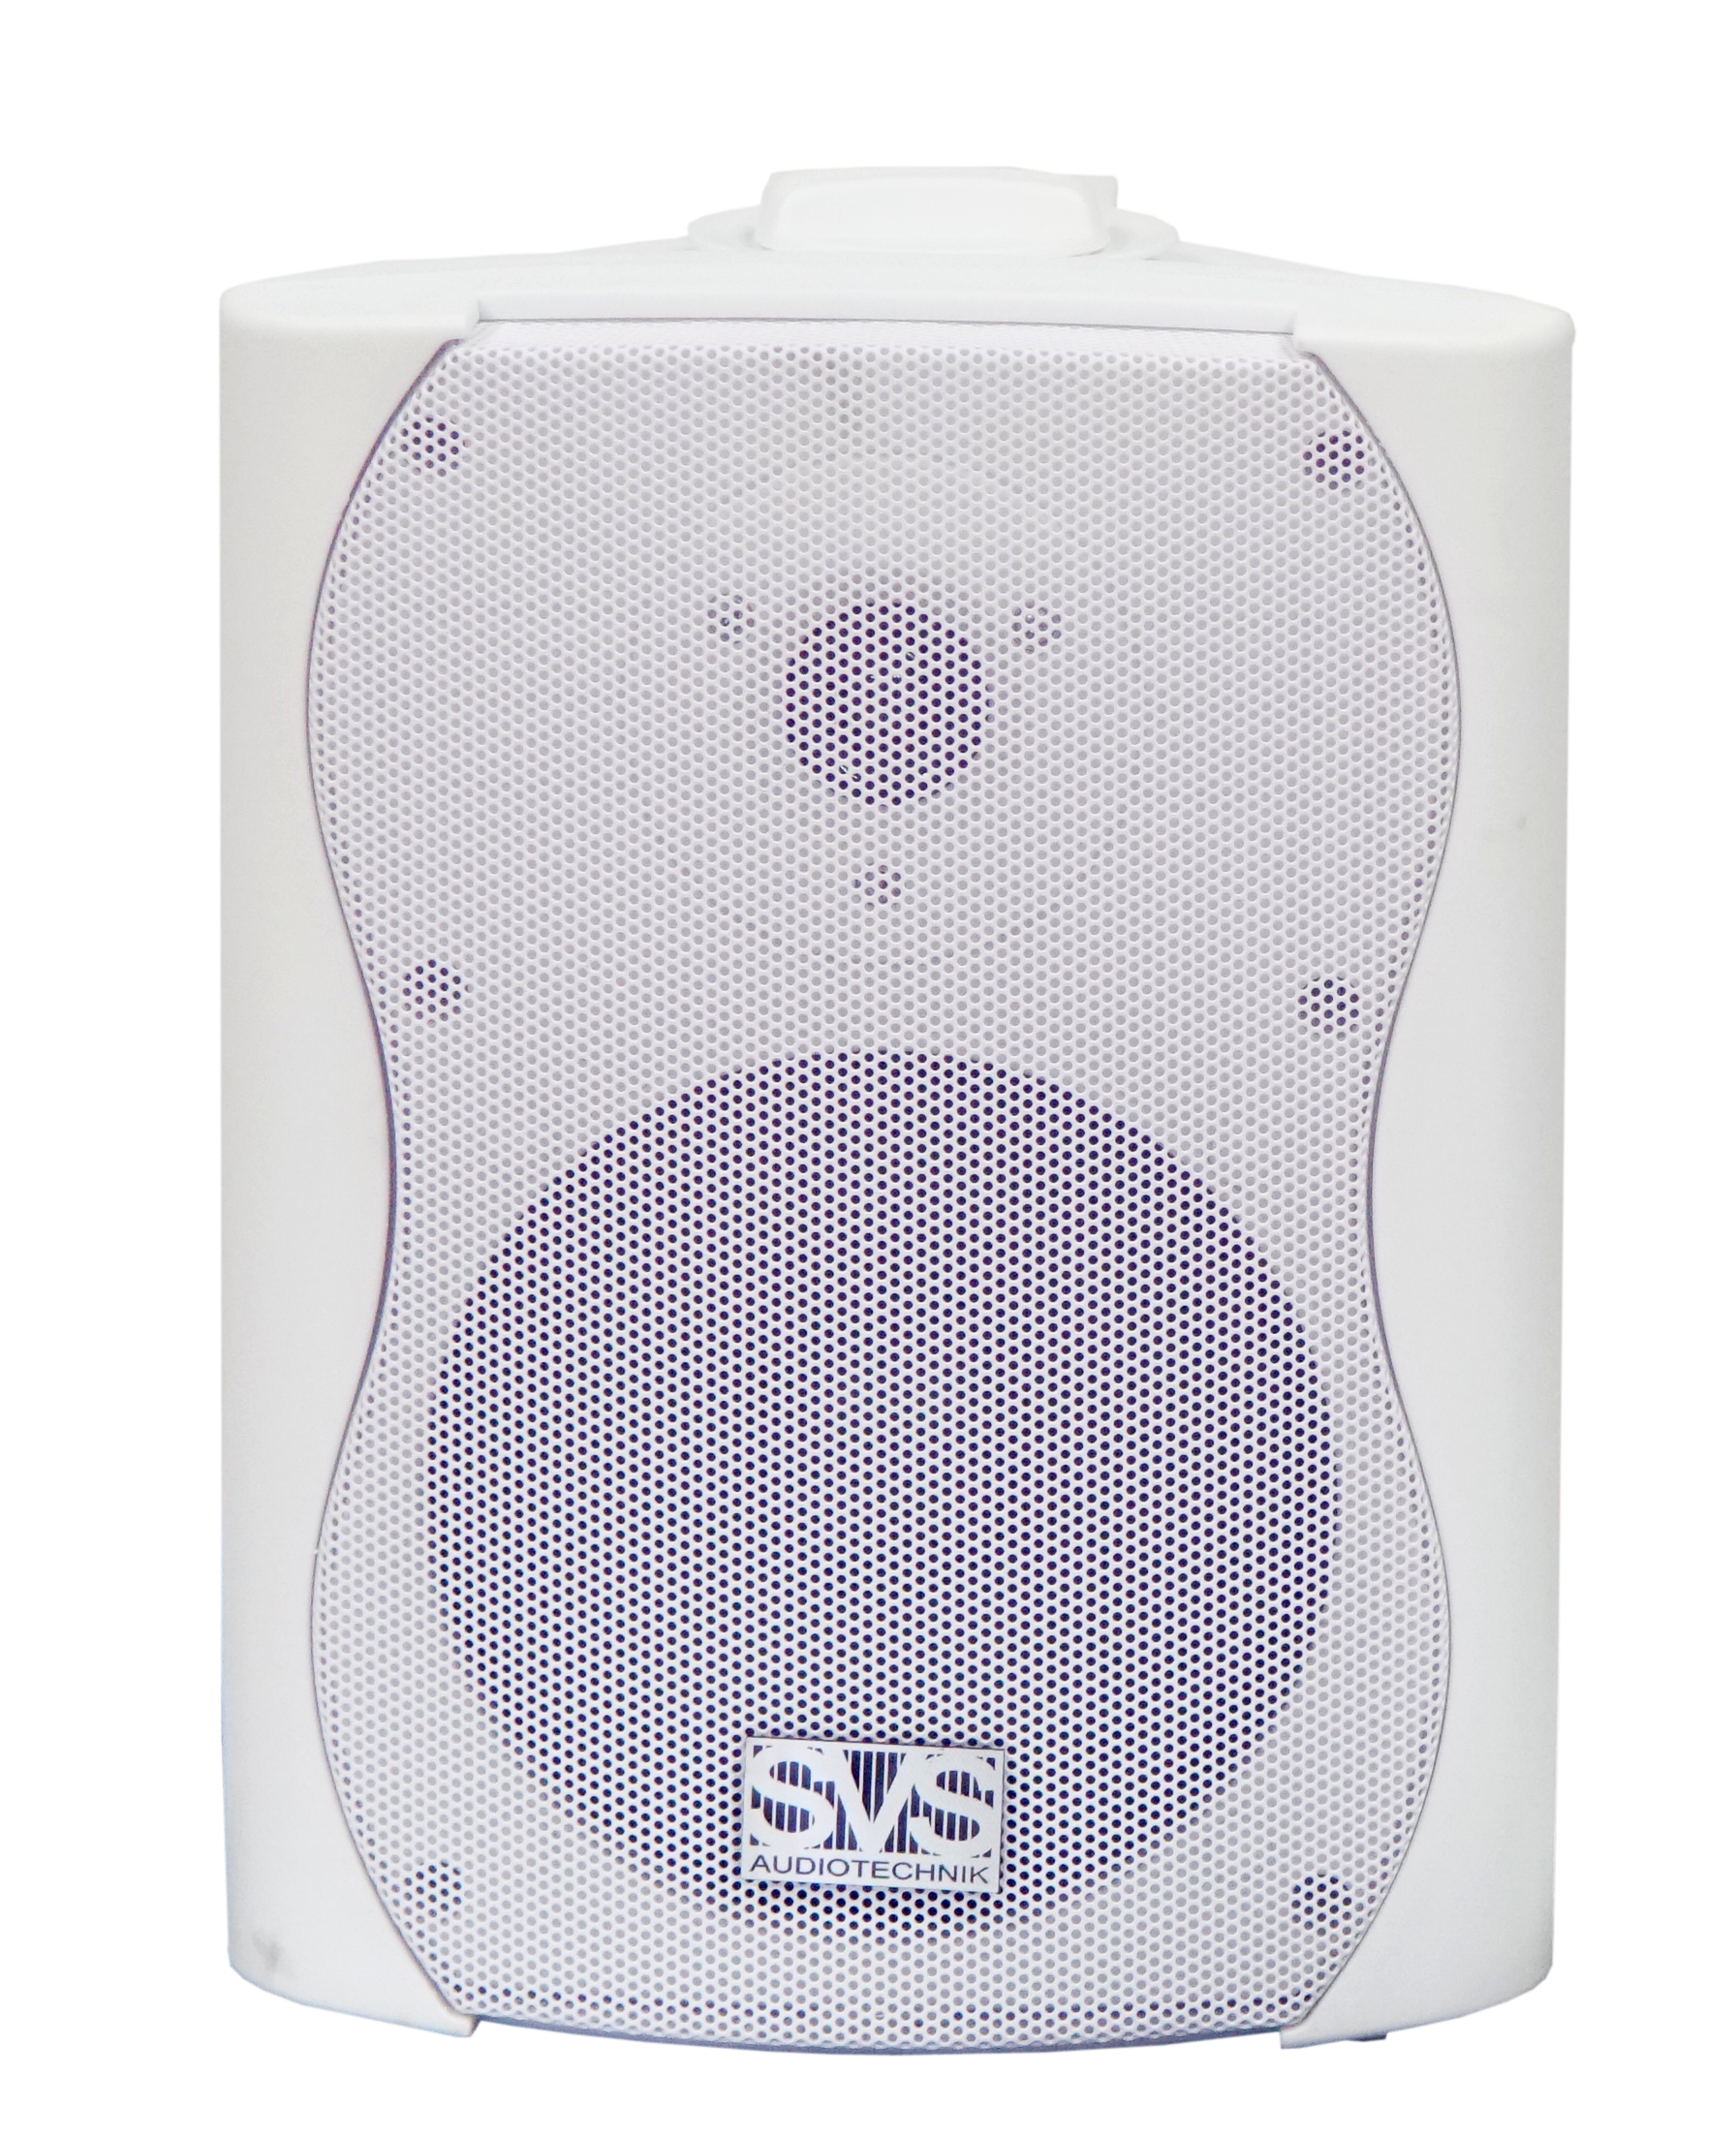 SVS Audiotechnik WS-30 White Громкоговоритель настенный, 30В, цвет белый купить в prostore.me